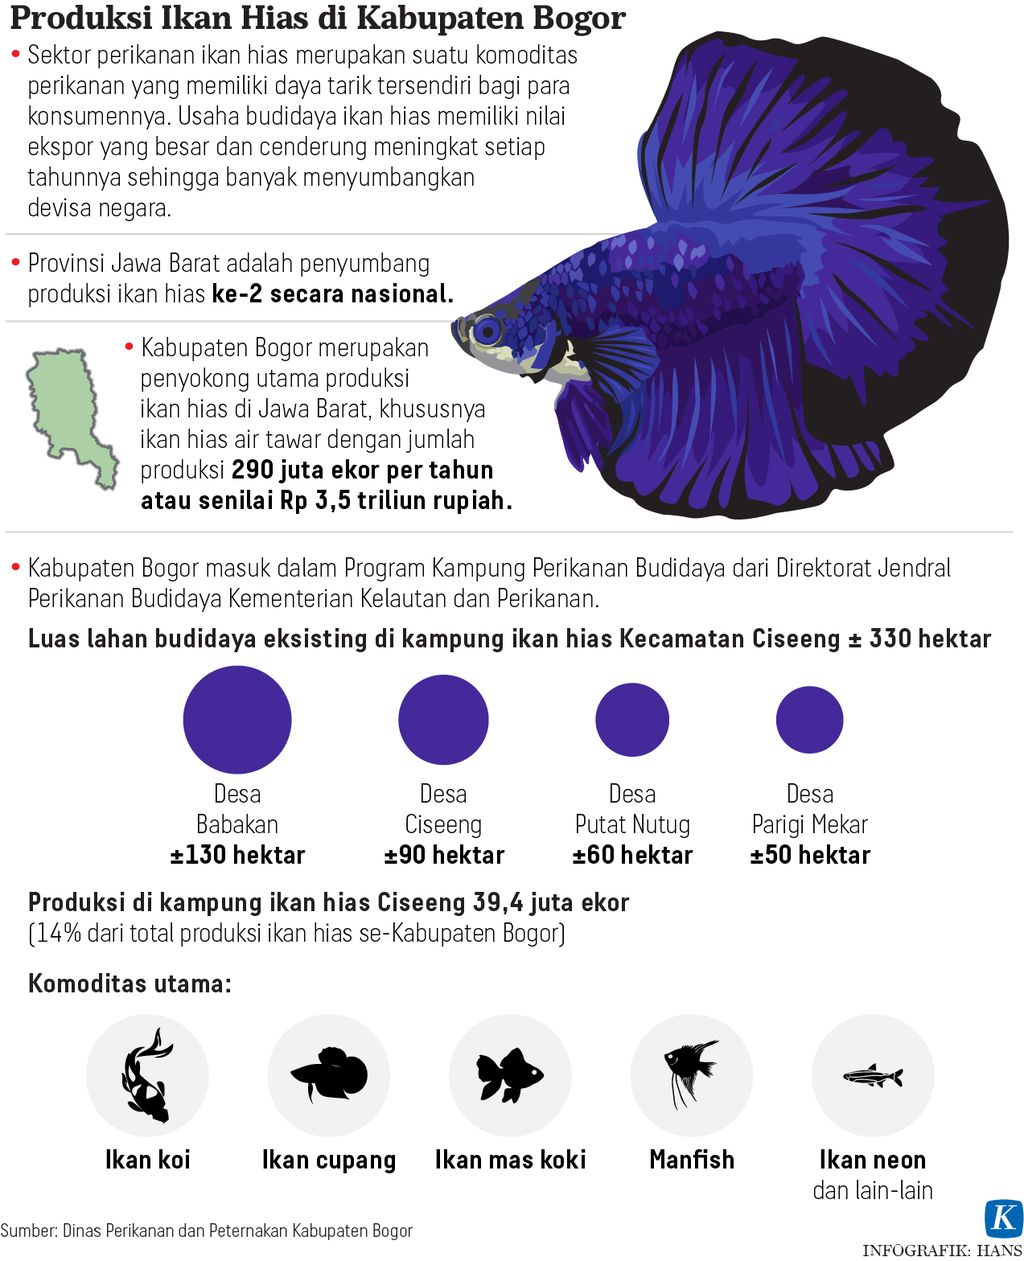 Infografik Produksi Ikan Hias di Kabupaten Bogor